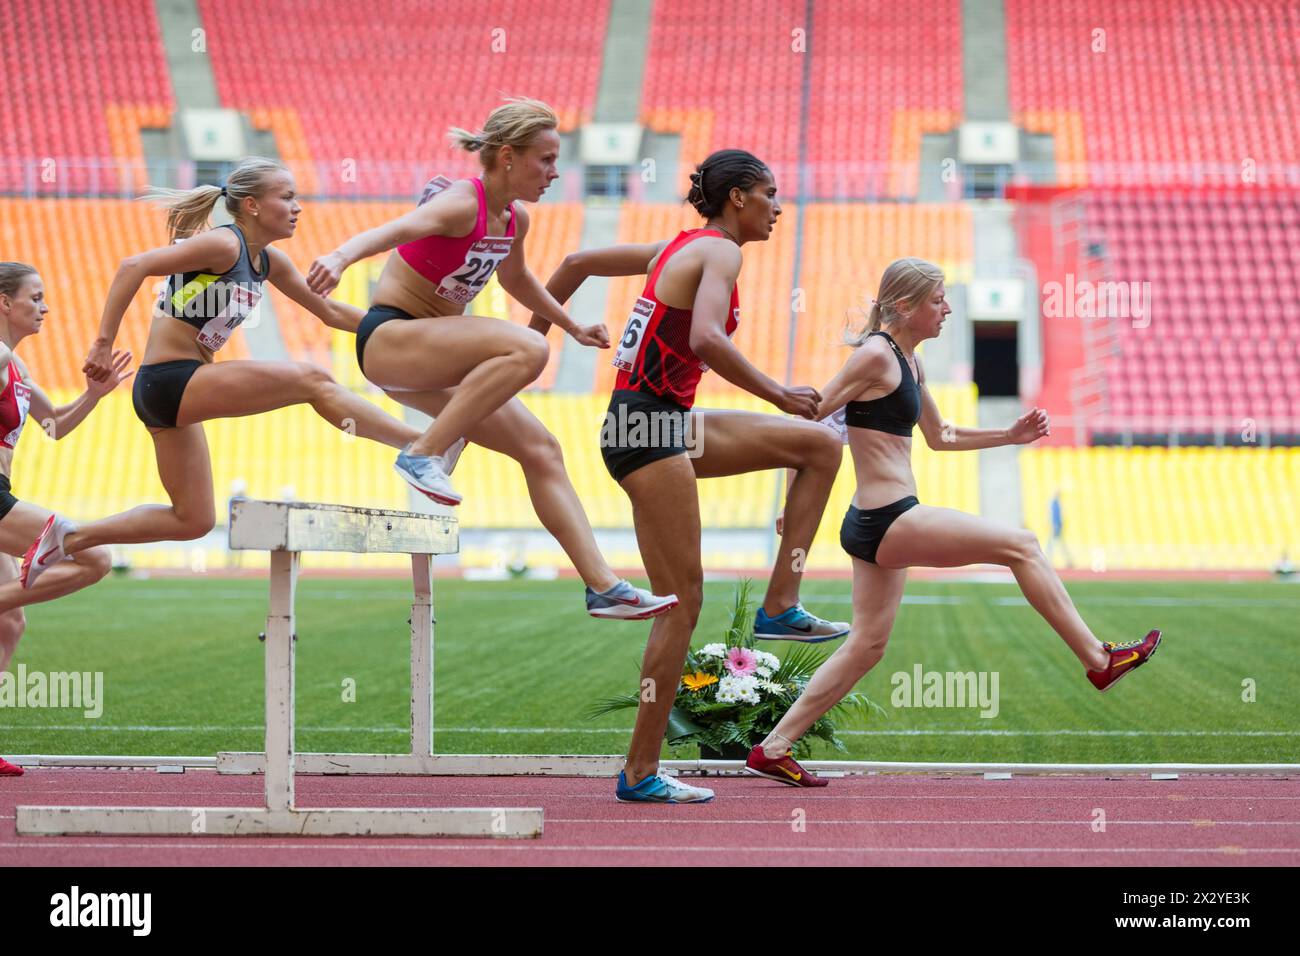 MOSKAU – 11. JUN: Frauen können Hindernisse beim Internationalen Leichtathletikwettbewerb Moscow Challenge am 11. Juni 2012 in Luschniki, Moskau, Russ leicht überwinden Stockfoto